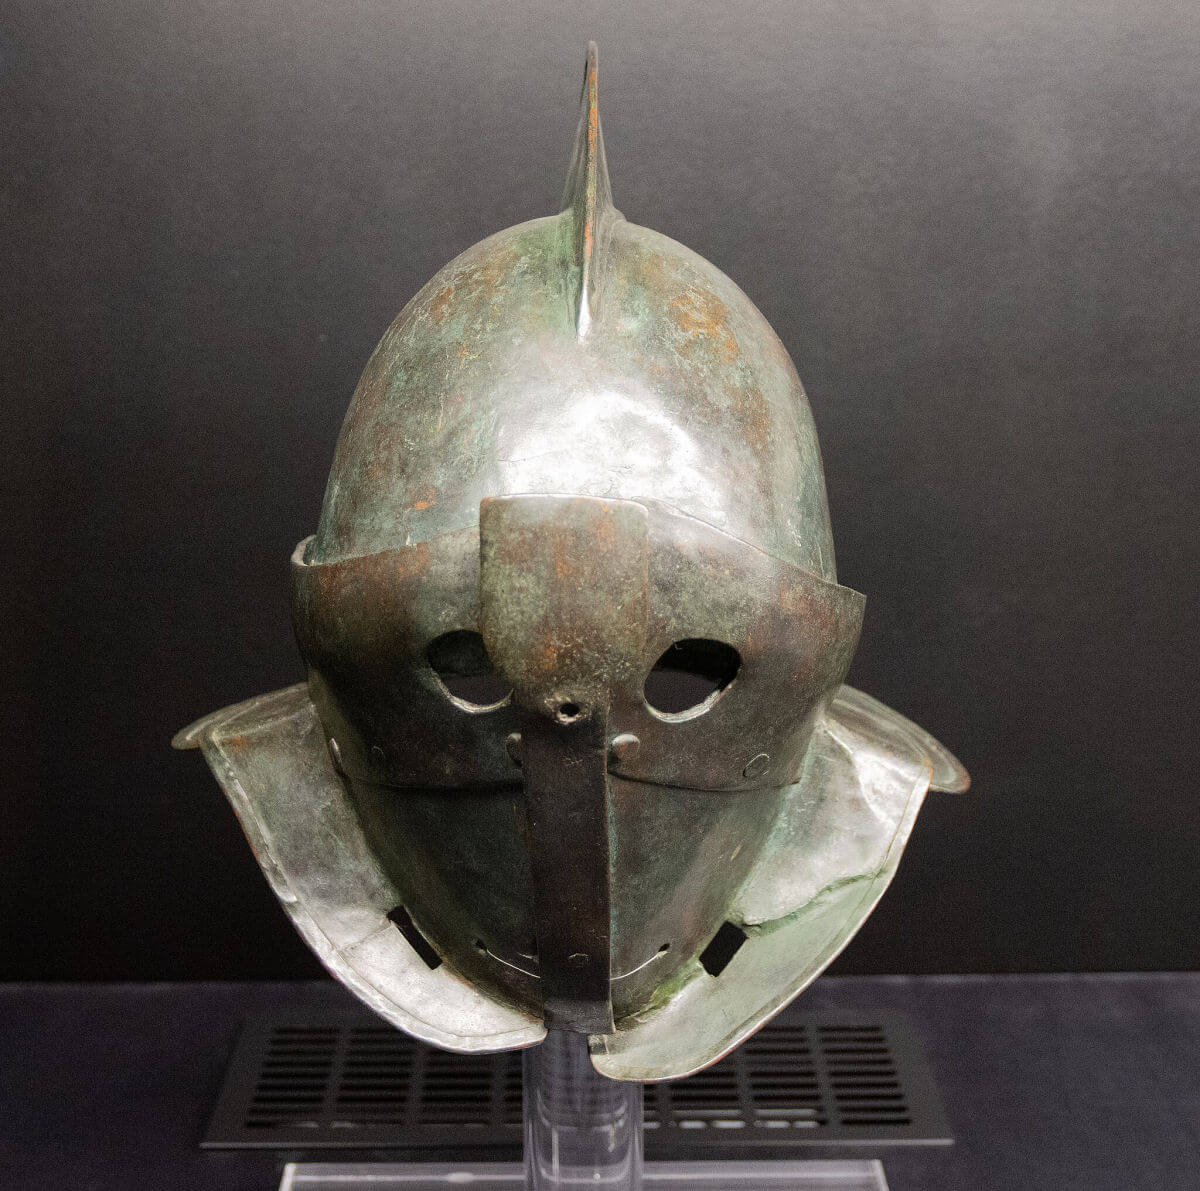 A helmet of a secutor gladiator found in Pompeii